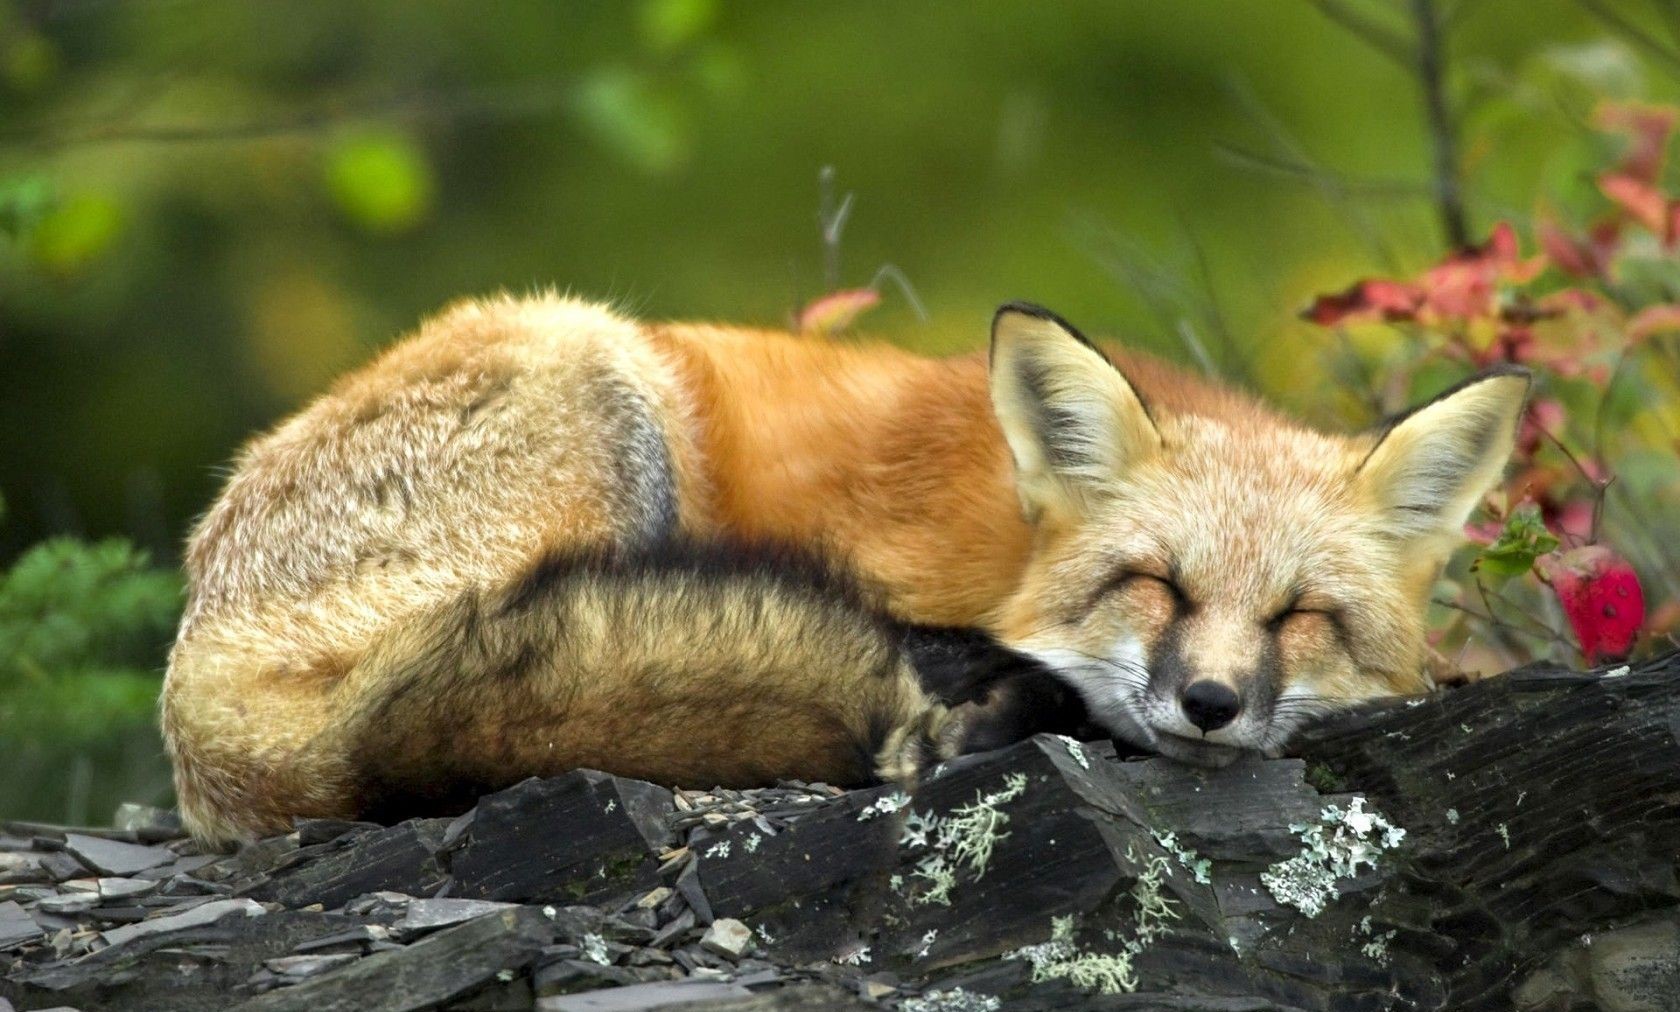 روباه زیبا به خواب رفته در بهار در یک قاب هنری جذاب 